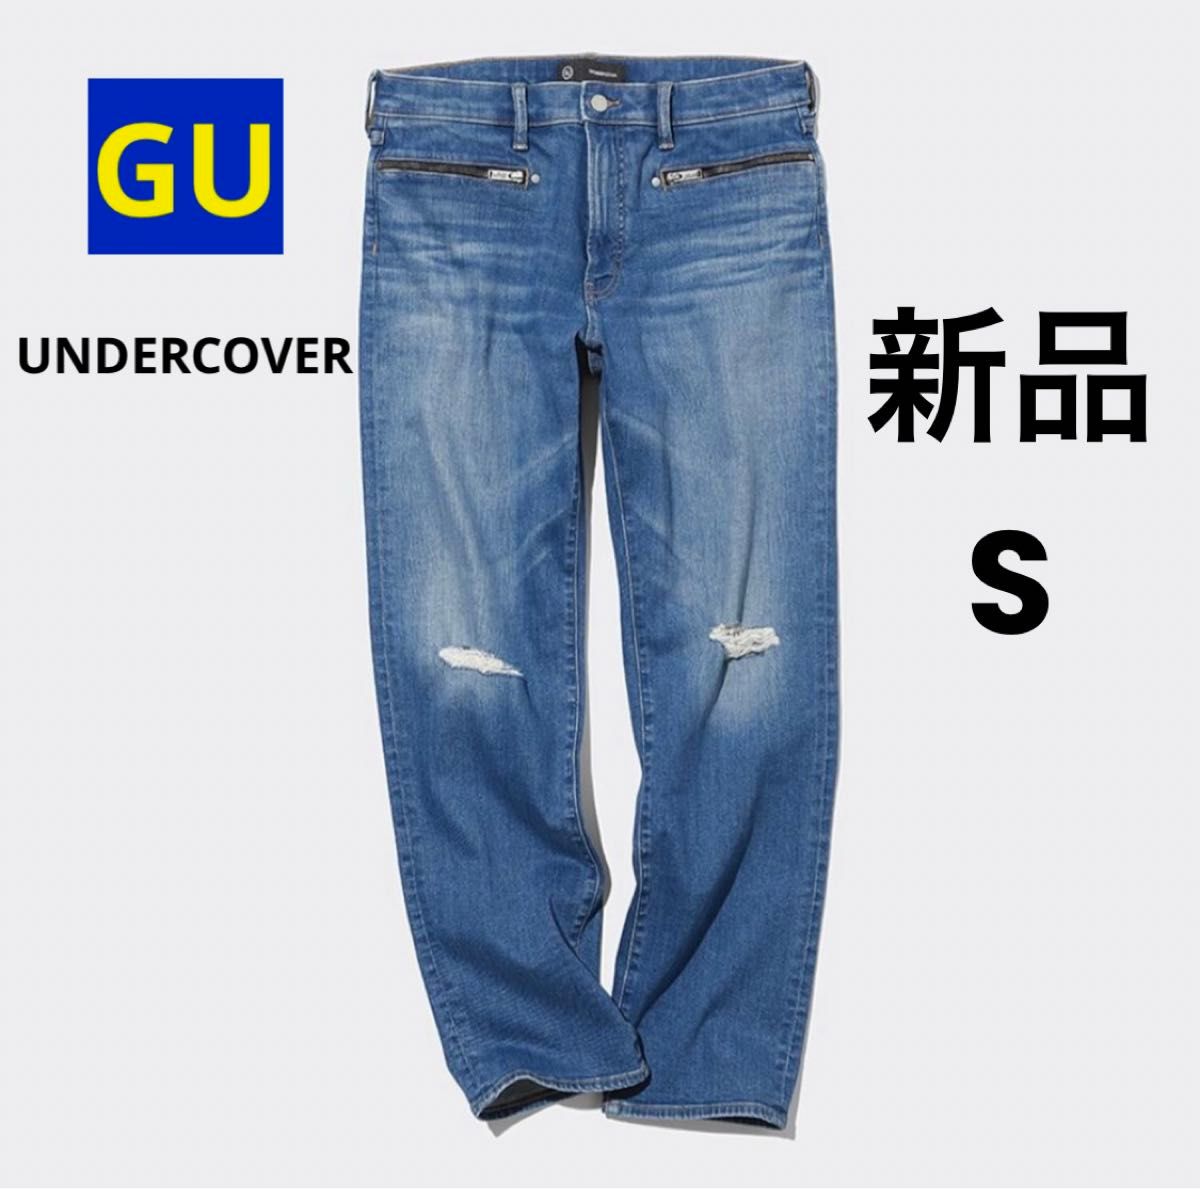 新品 GU ジーユー スリムダメージジーンズ UNDERCOVER アンダーカバー ブルー S デニムパンツ ユニセックス 